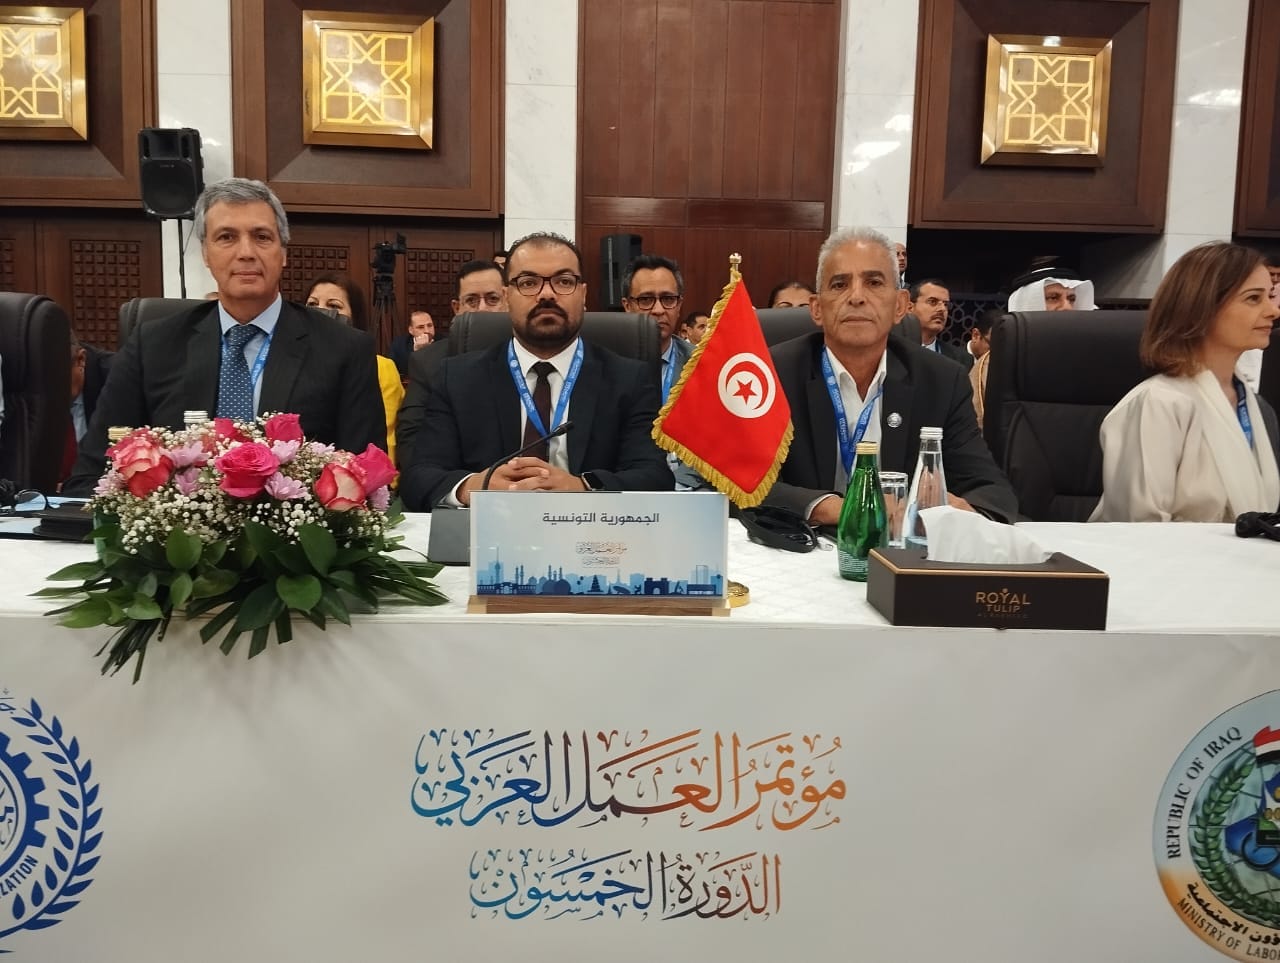   وزارة الشؤون الاجتماعية تشارك في أشغال الدورة 50 لمؤتمر العمل العربي المنعقدة بالعراق